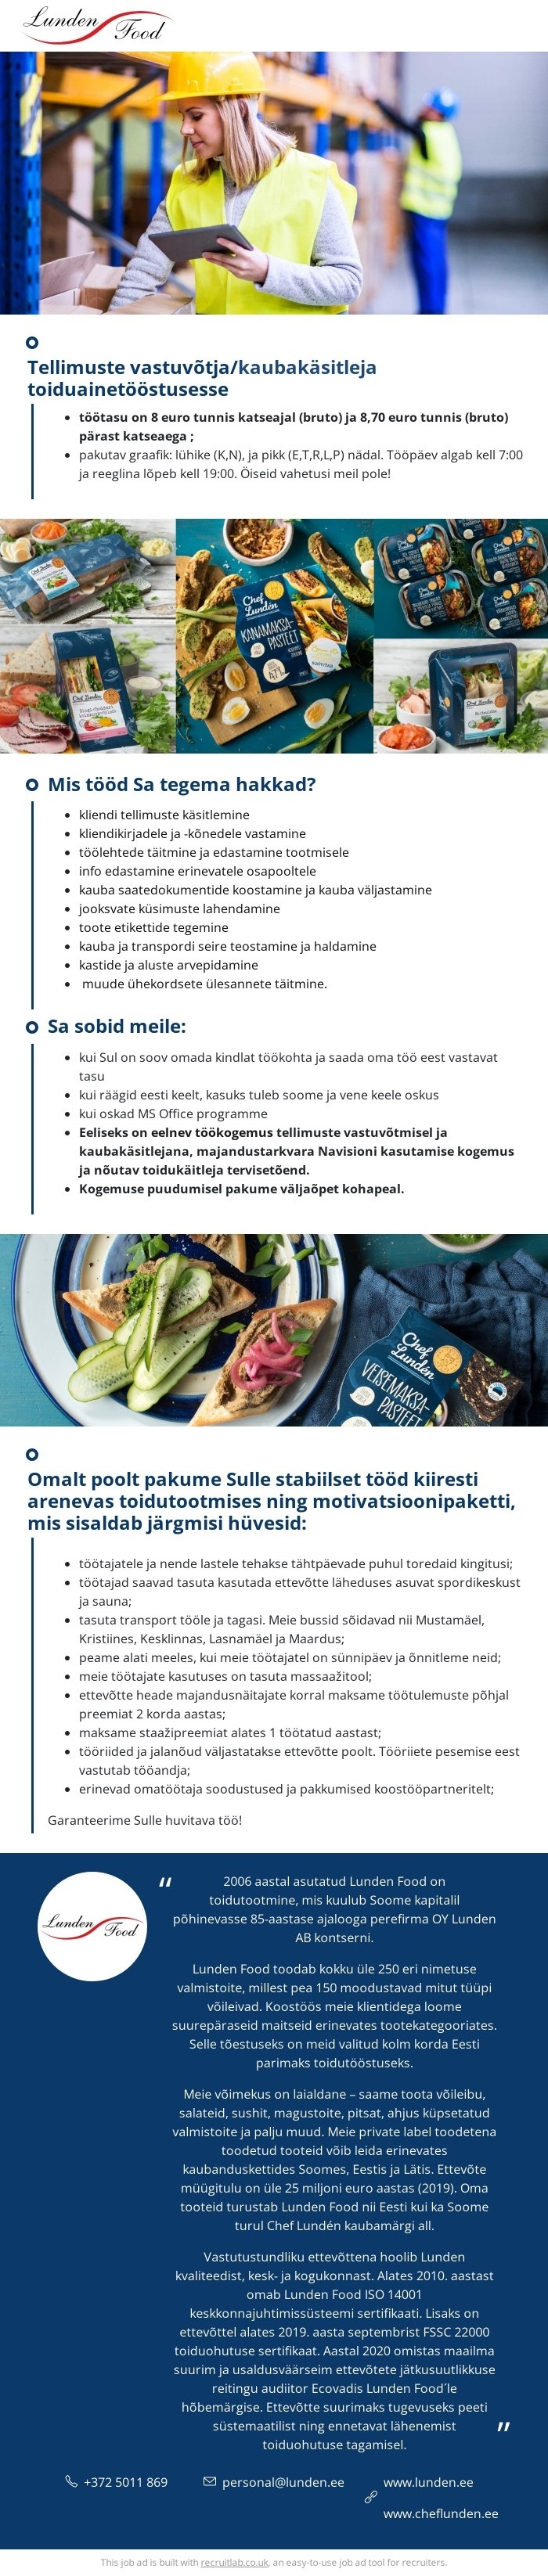 Lunden Food OÜ Tellimuste vastuvõtja/kaubakäsitleja